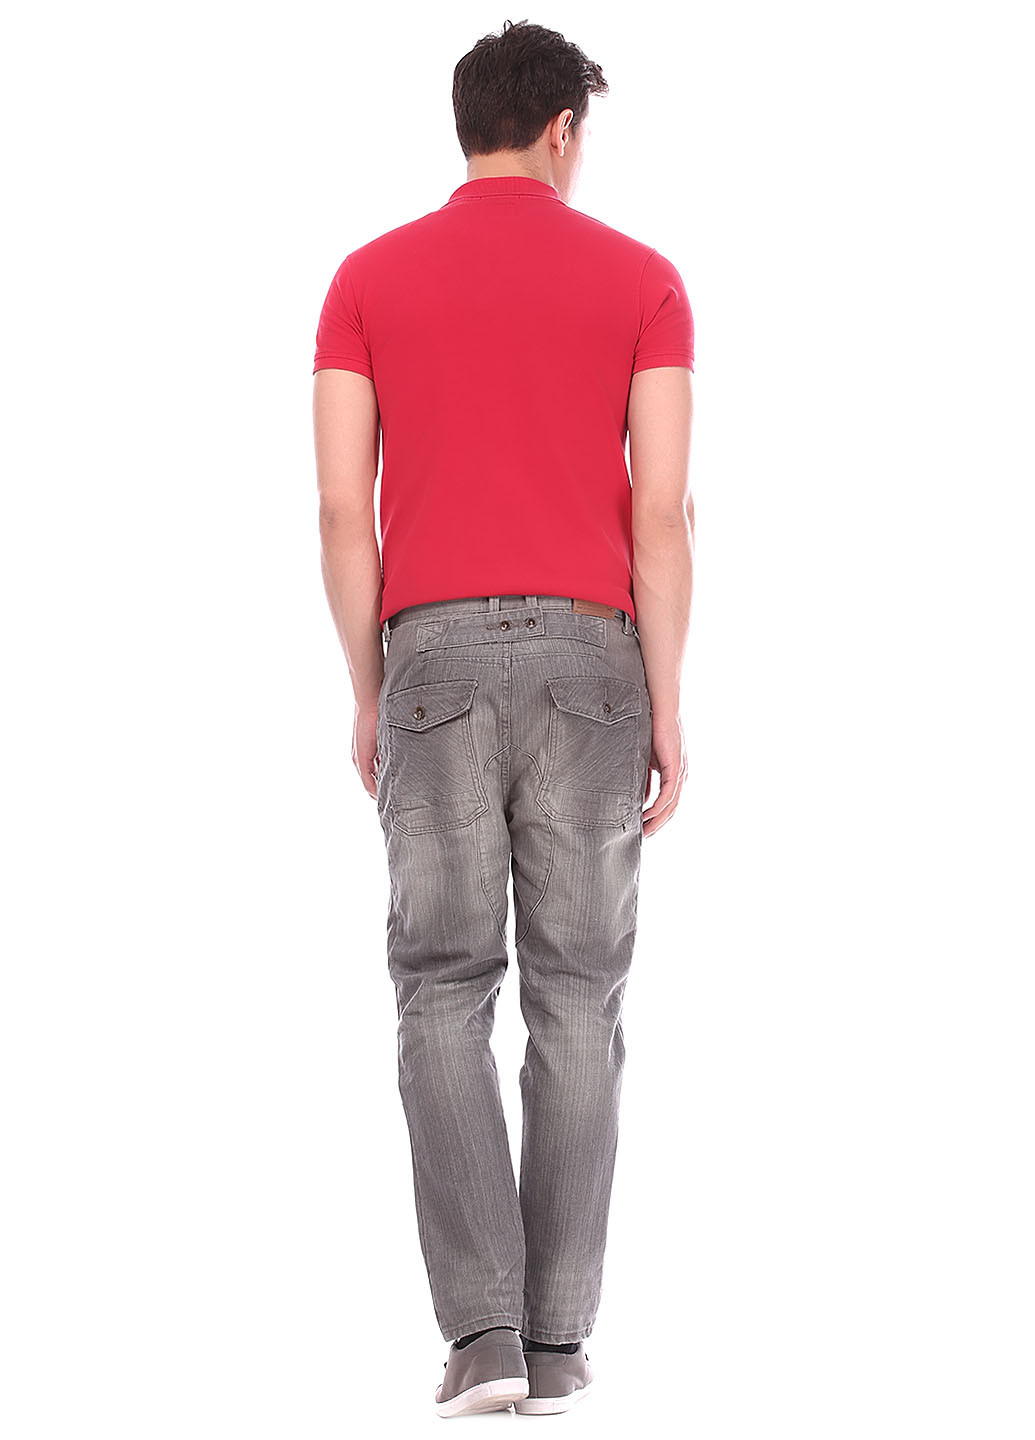 Серые кэжуал демисезонные прямые брюки Aggresive